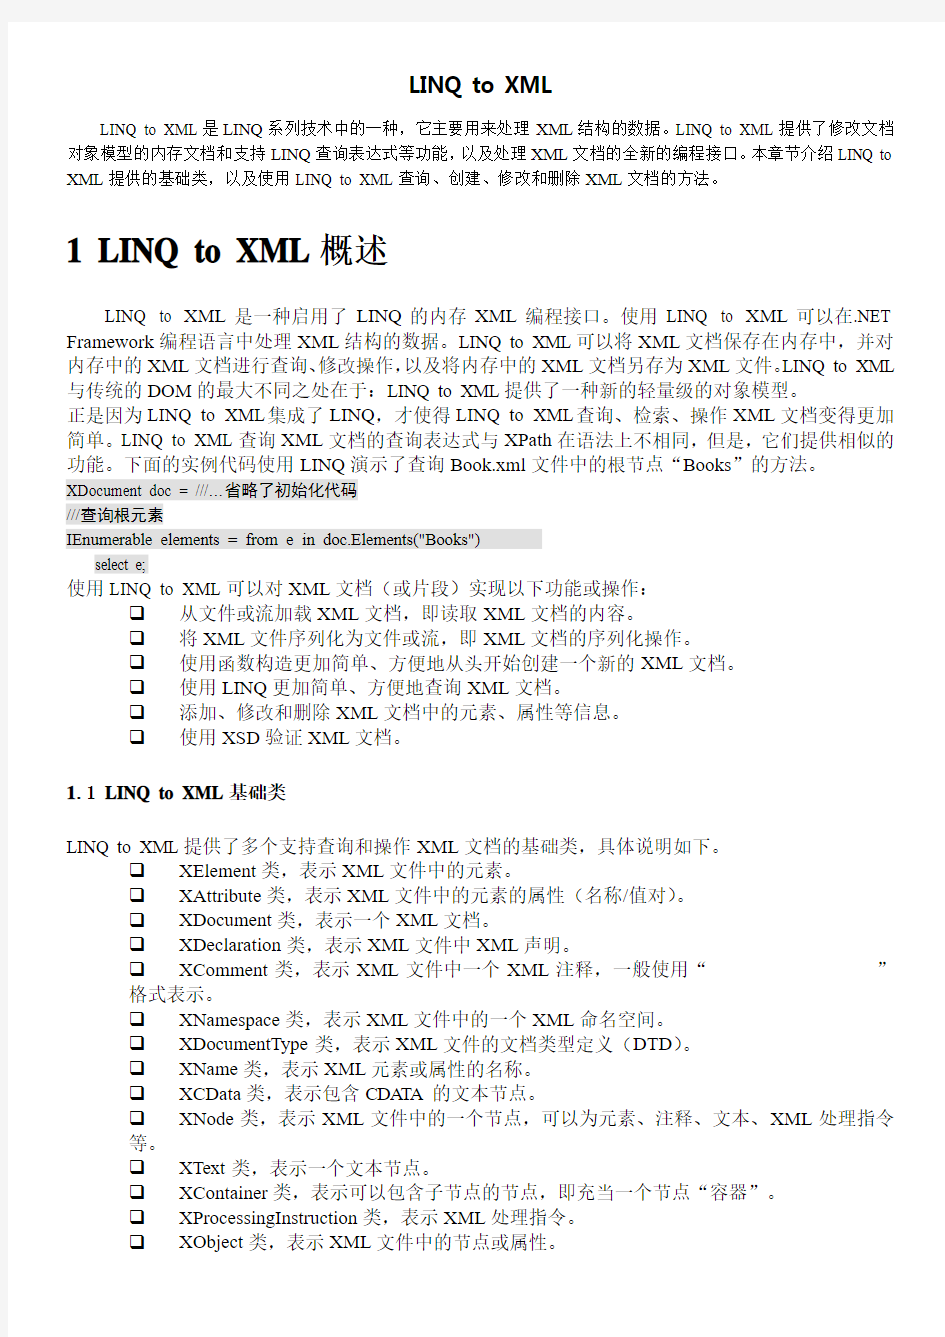 LINQ to XML